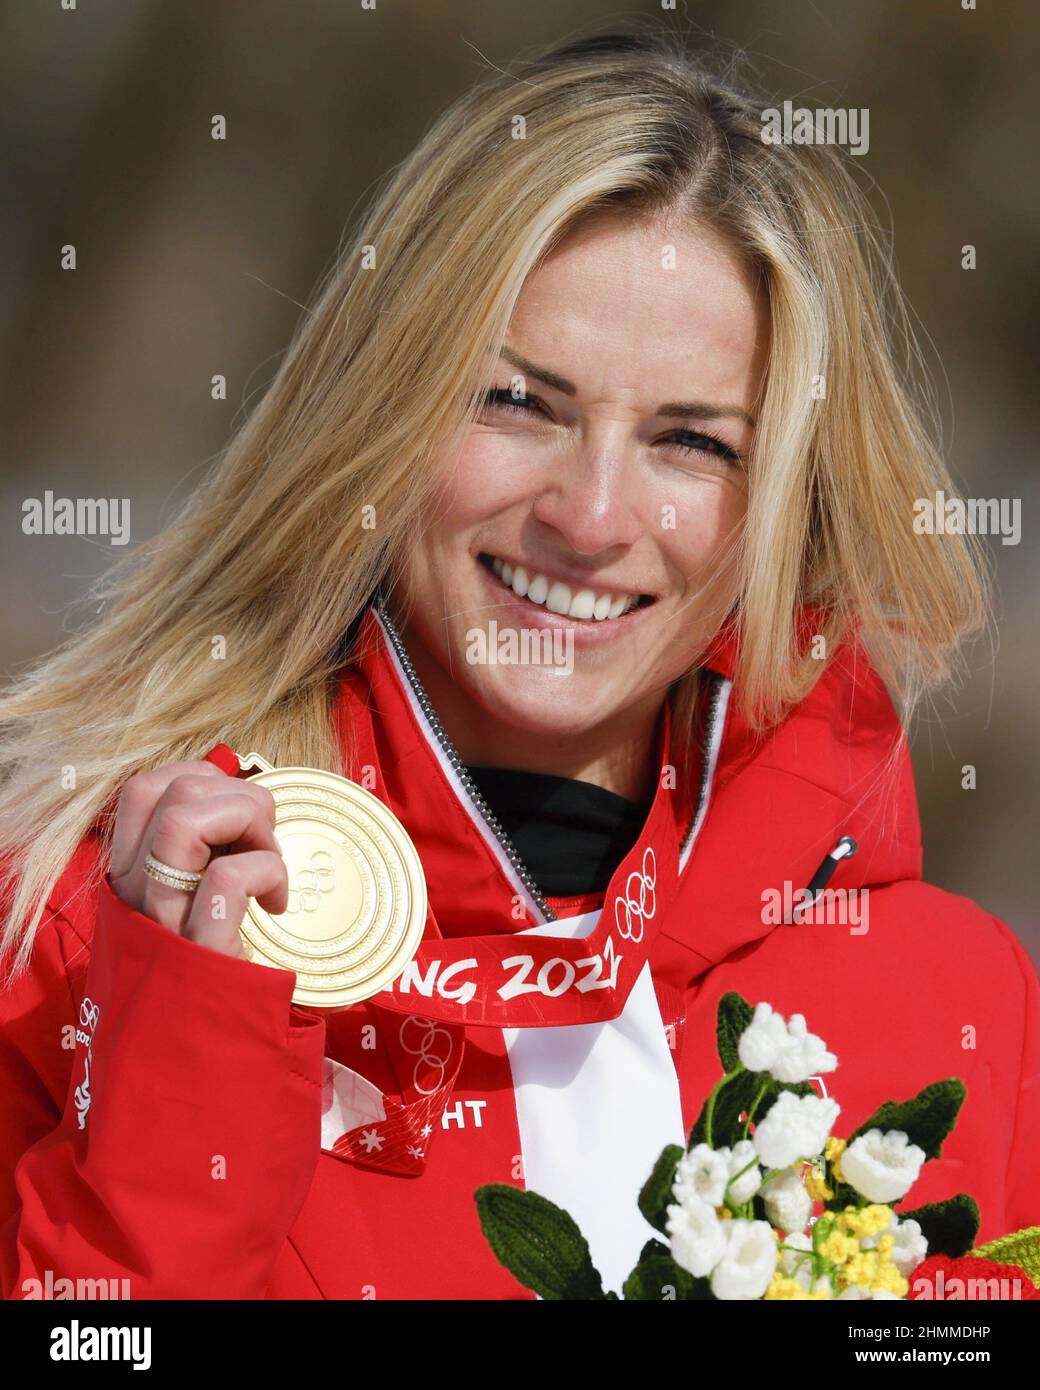 31) Switzerland's Lara Gut-Behrami wins women's super-G, while